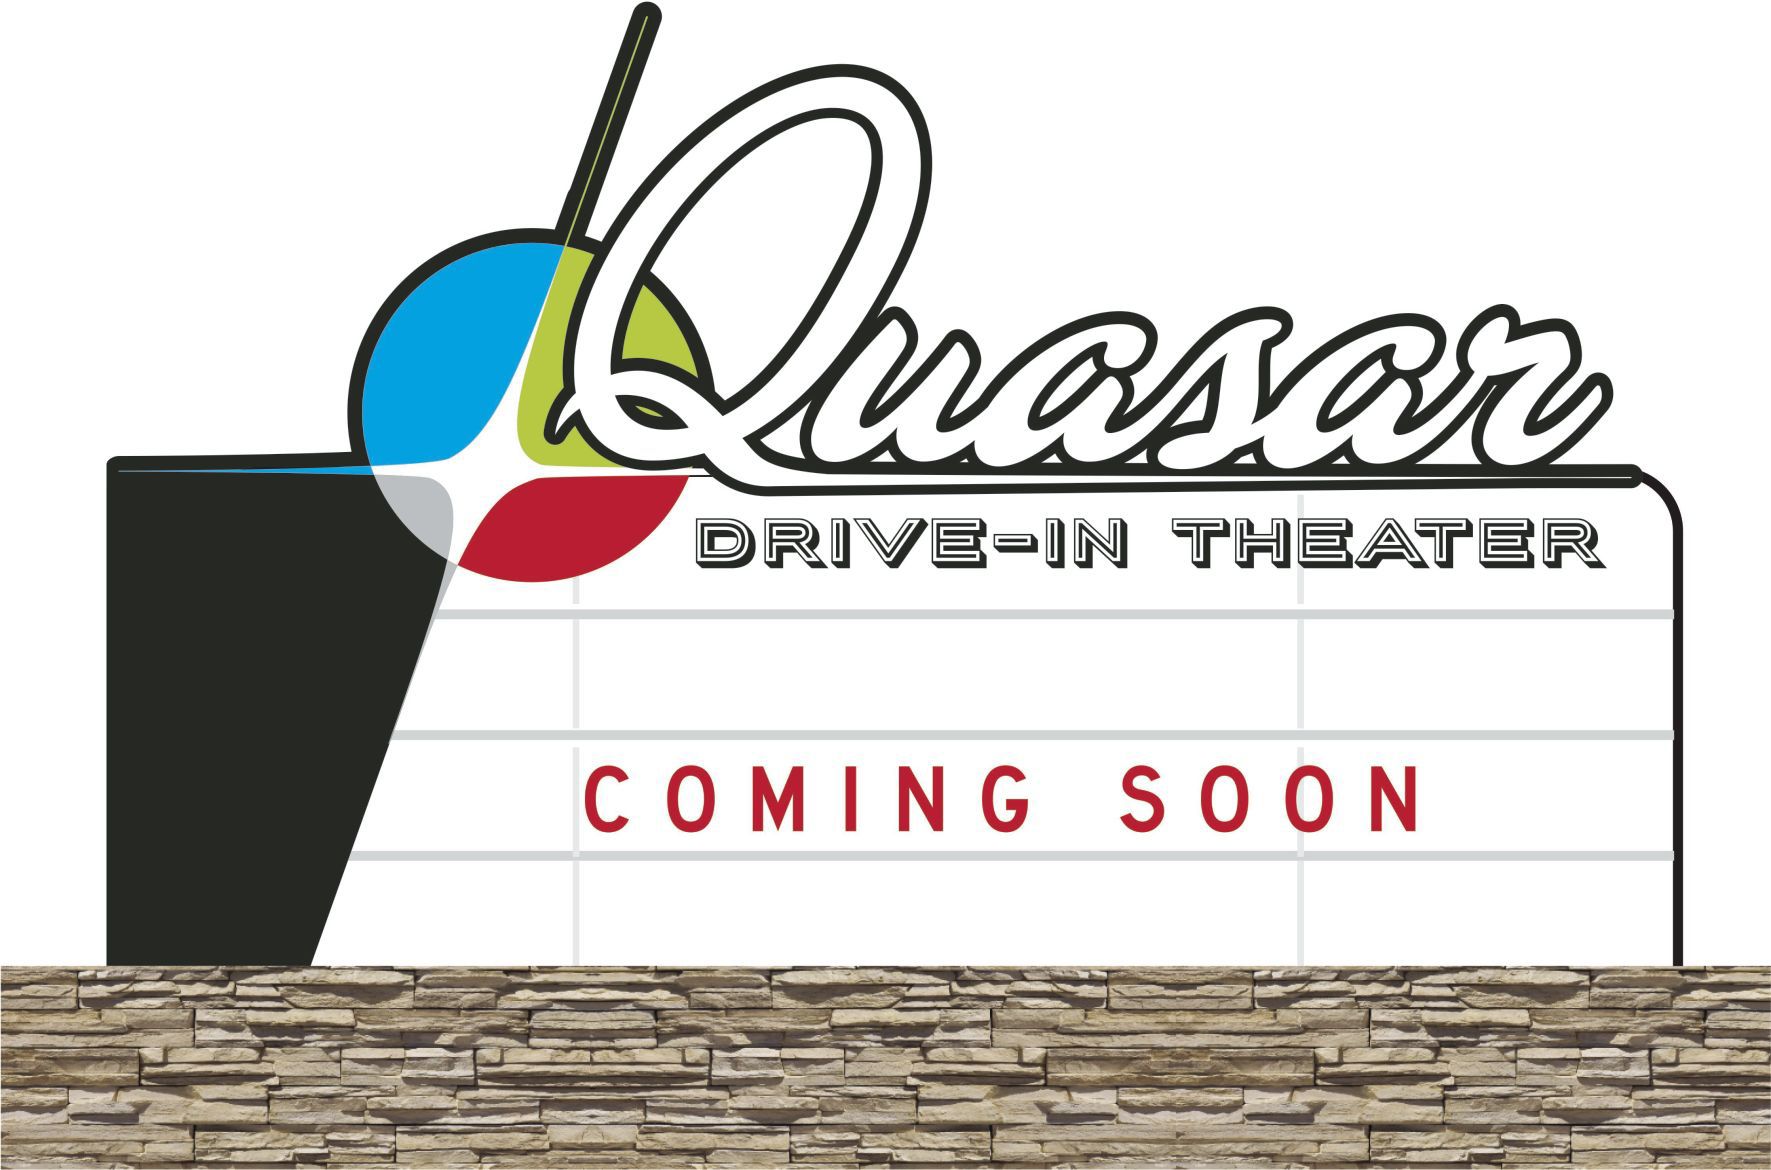 quasar movie theater